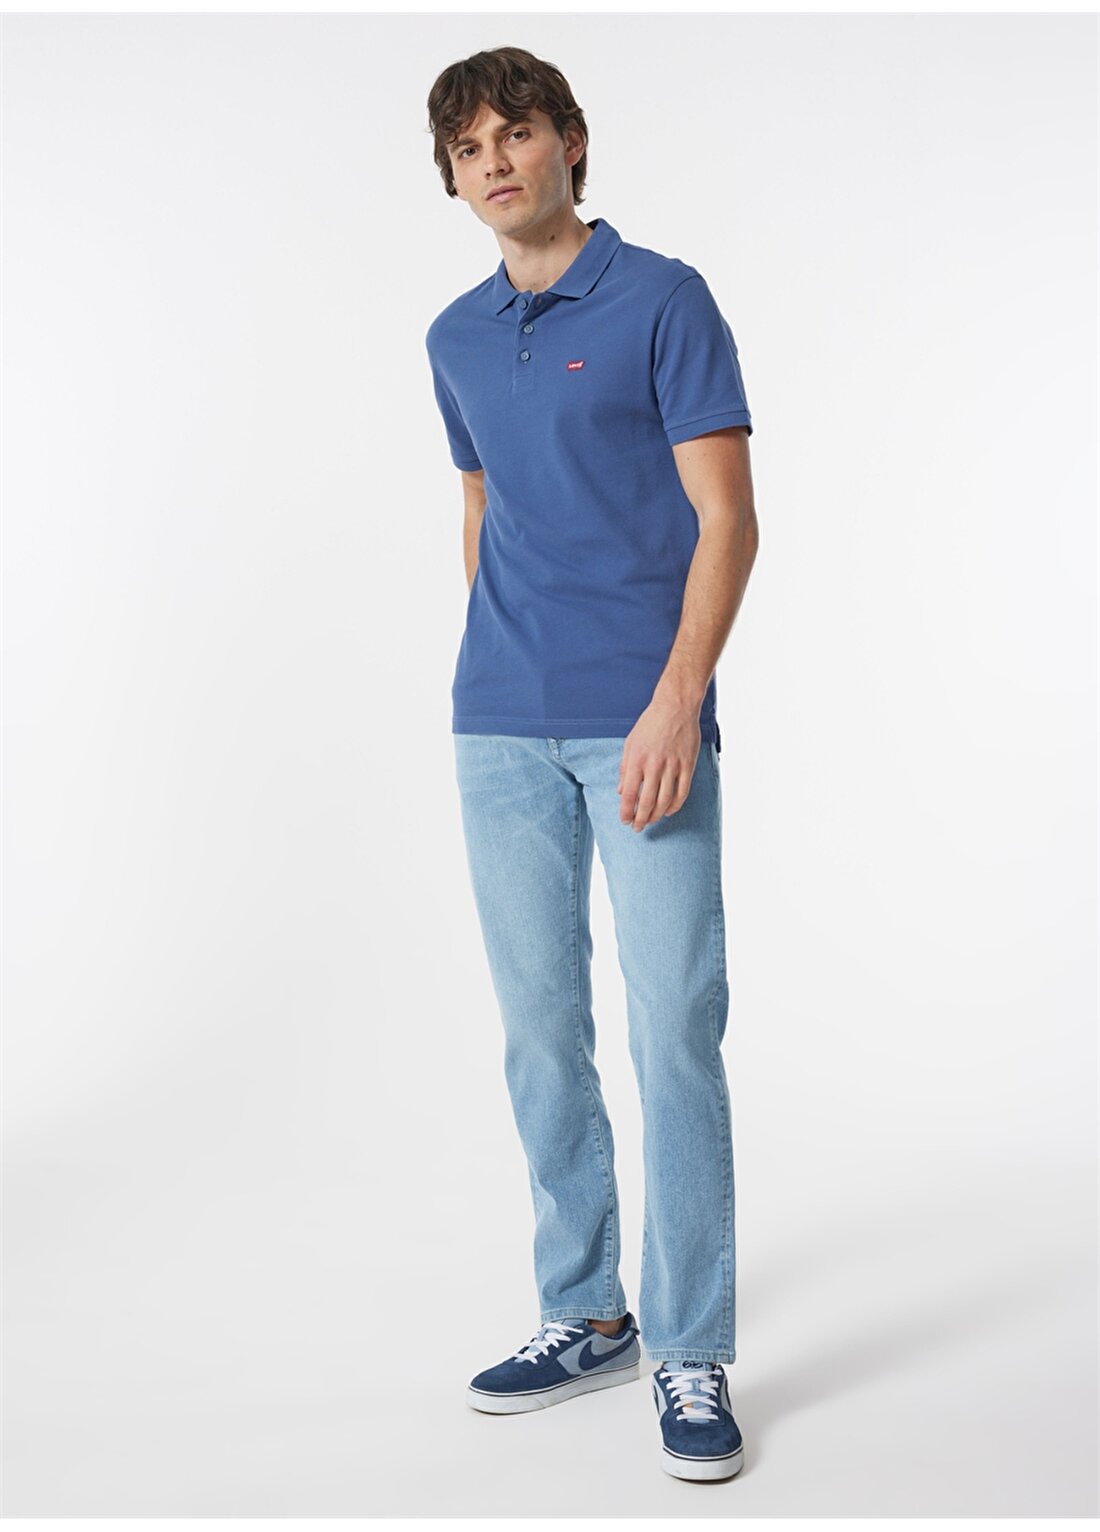 Levis Düz Açık Mavi Erkek Polo T-Shirt A2085-0001_LEVIS HM POLO CLASSIC VI